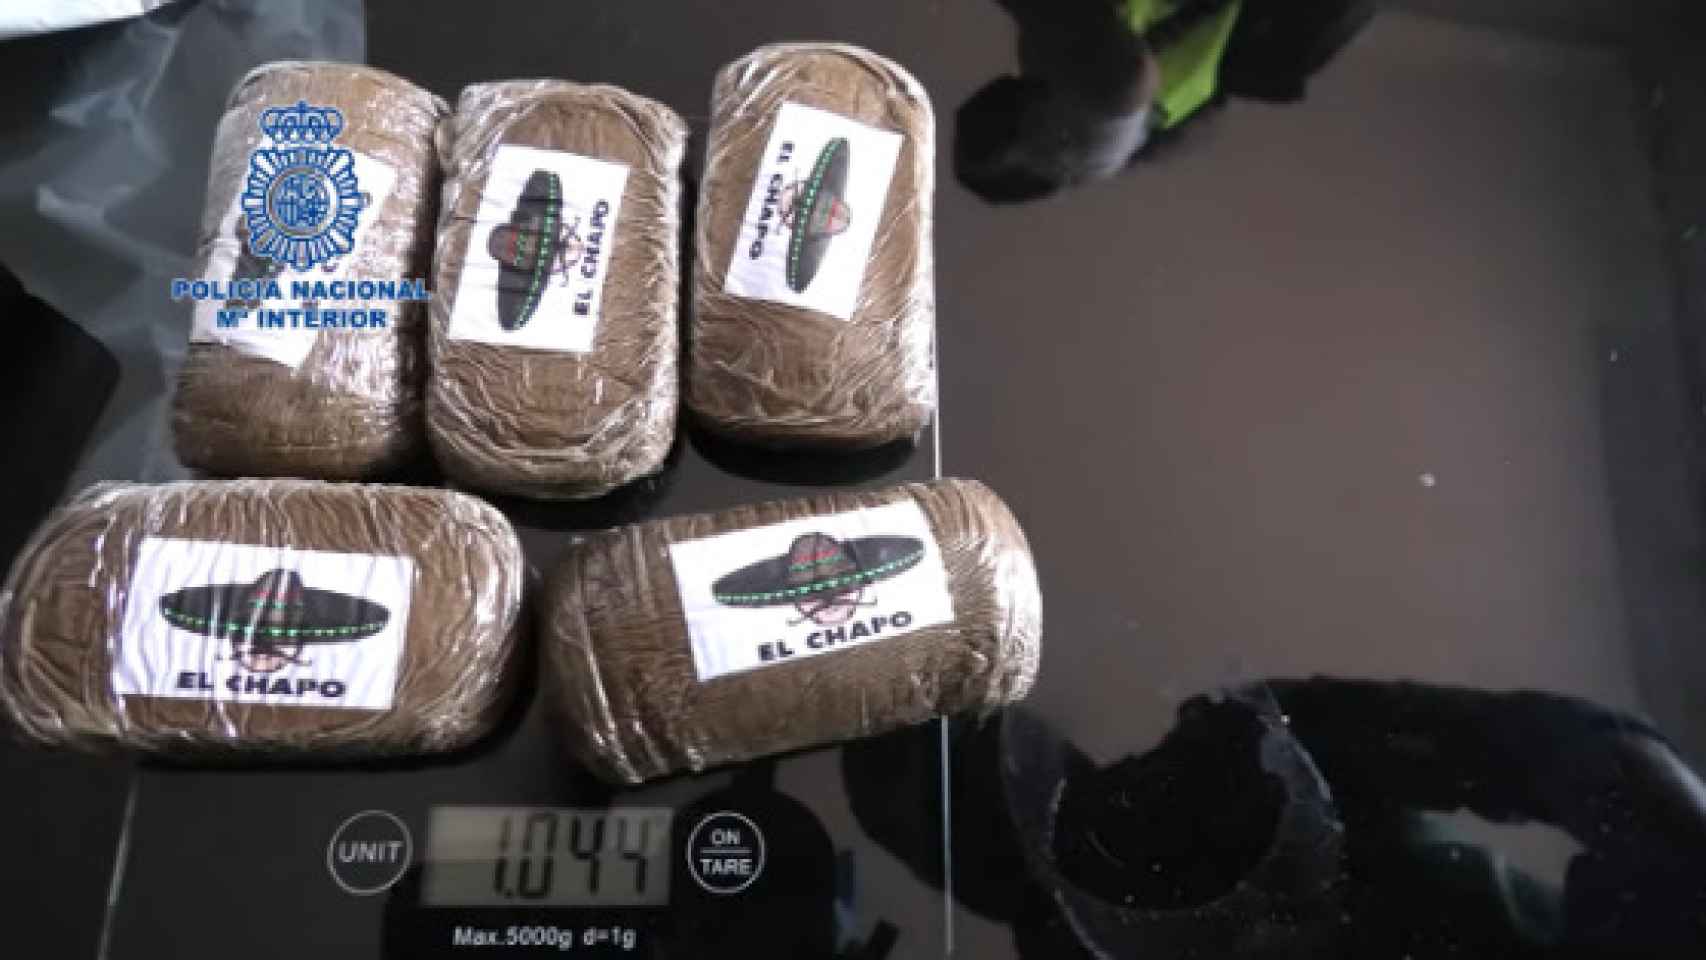 Paquetes de cocaína encontrados en la vivienda de Coín.